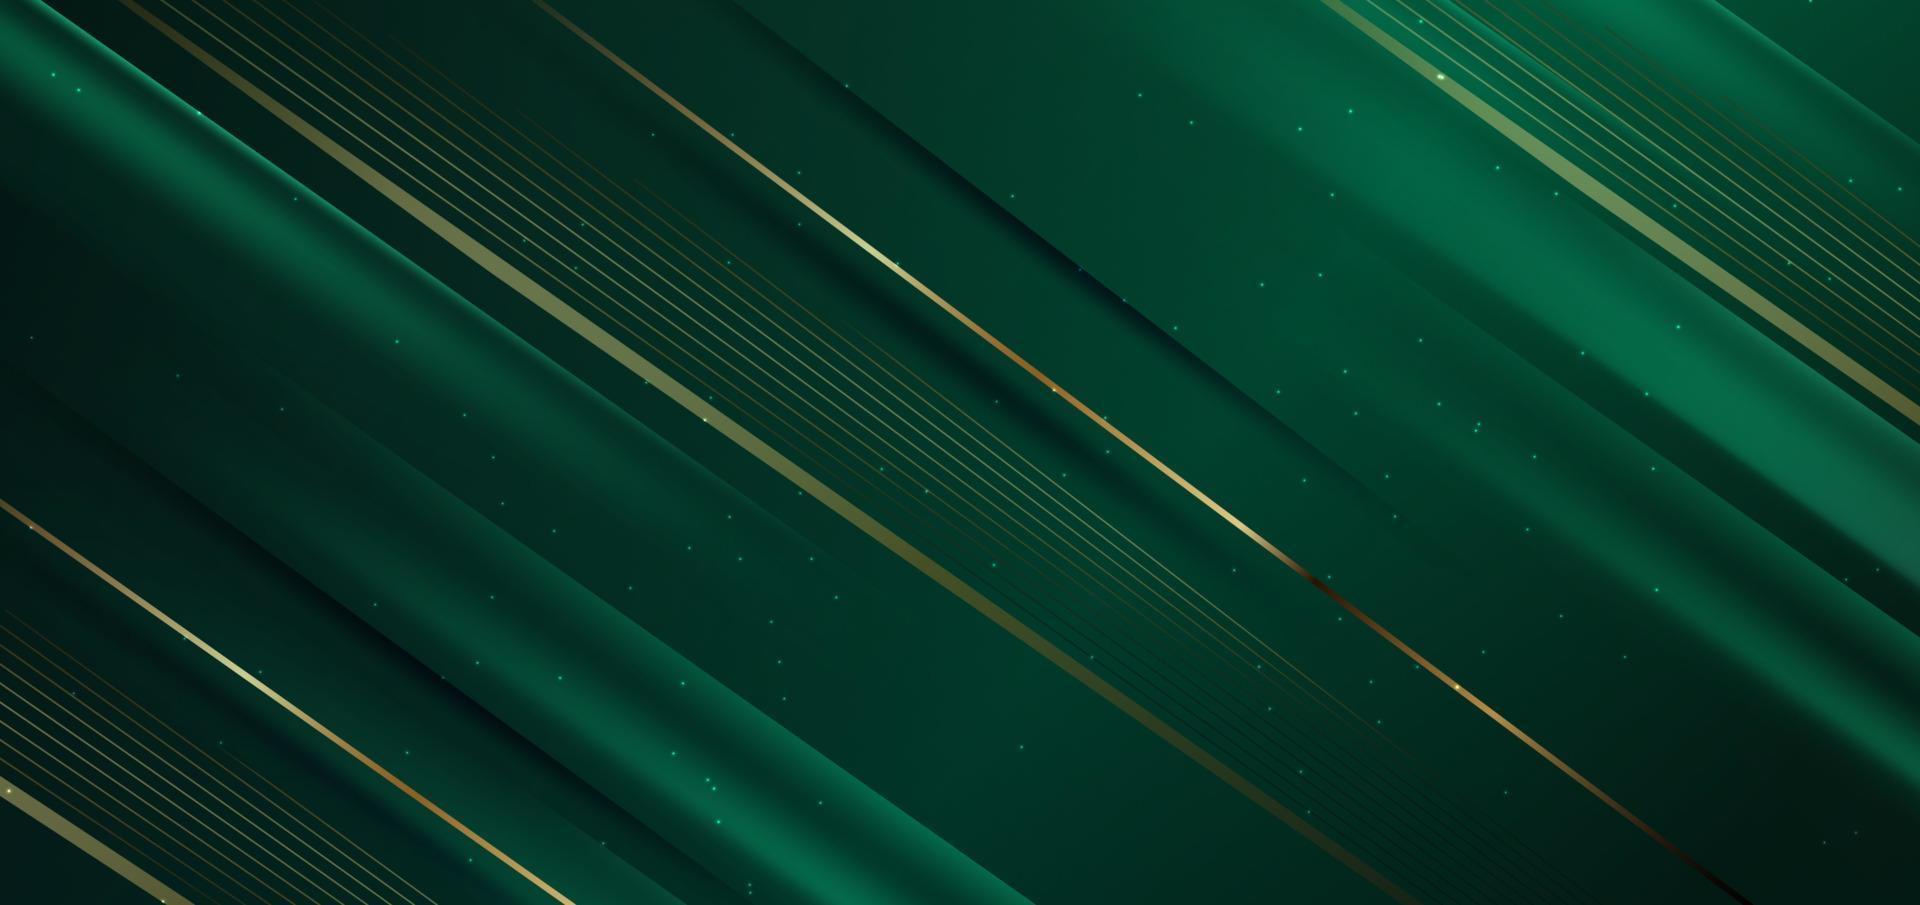 abstrato elegante fundo verde escuro com diagonal de linha dourada e brilho de efeito de iluminação. design de modelo de luxo. vetor